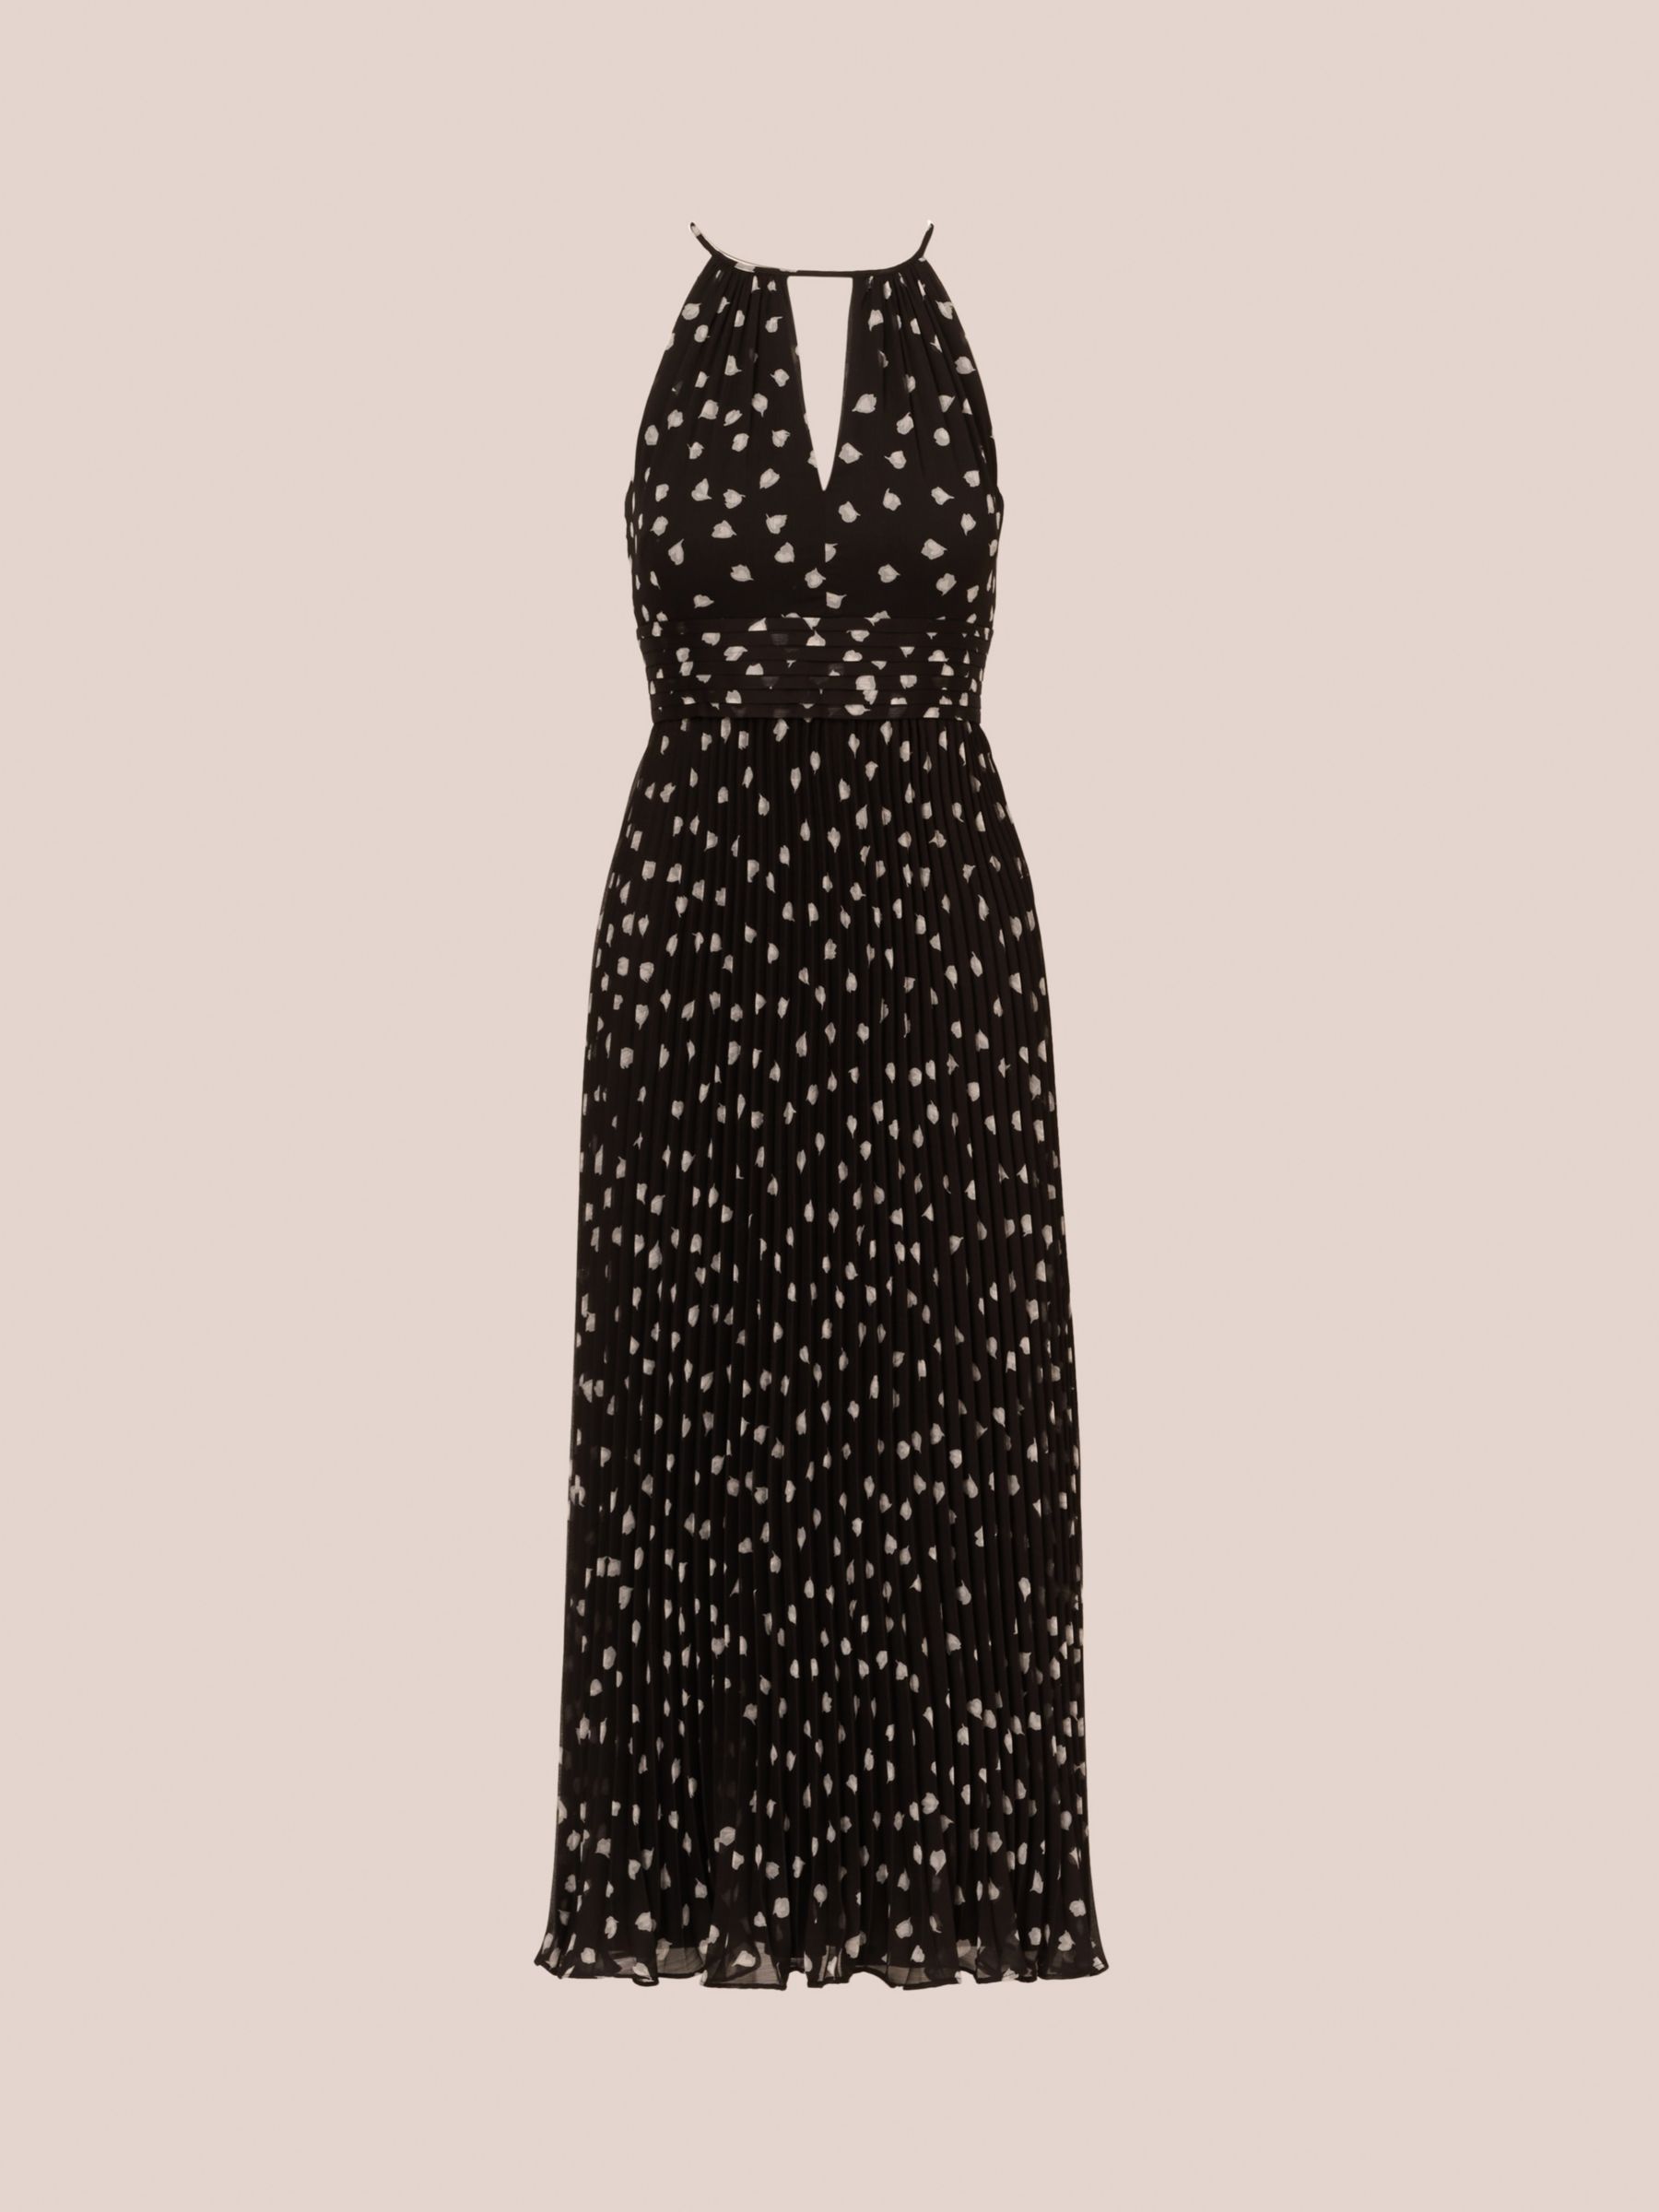 Adrianna Papell Pleated Midi Dress, Black/Ivory, 6